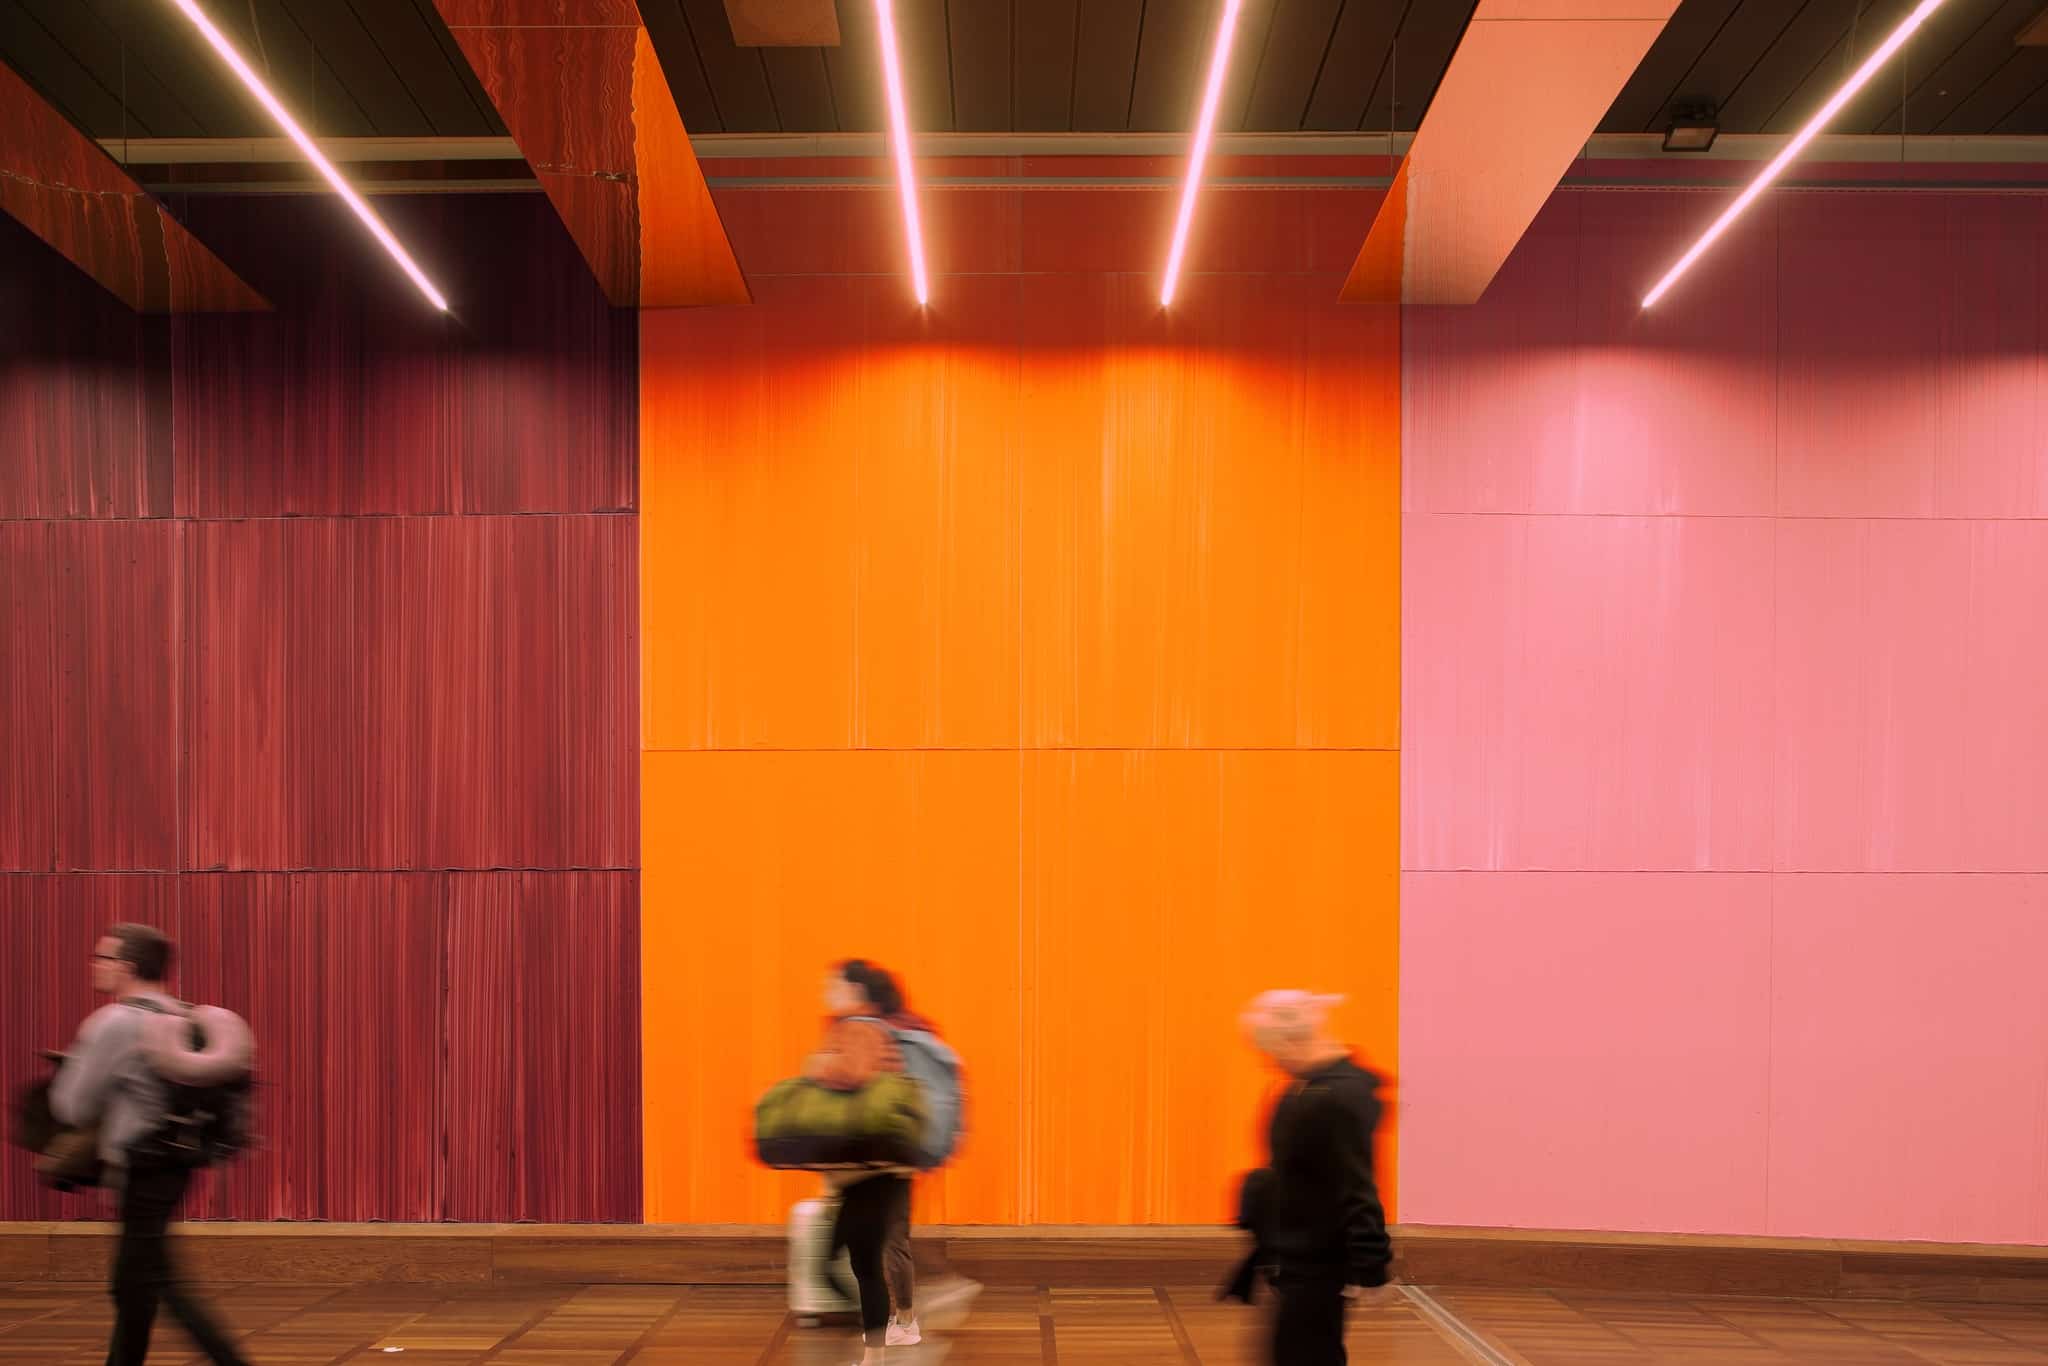 Københavns Lufthavn - Zeso Architects - www.zeso.dk - Farverig baggrund, vinrød, orange og rosa væg, med loftsbelysning og folk der går forbi